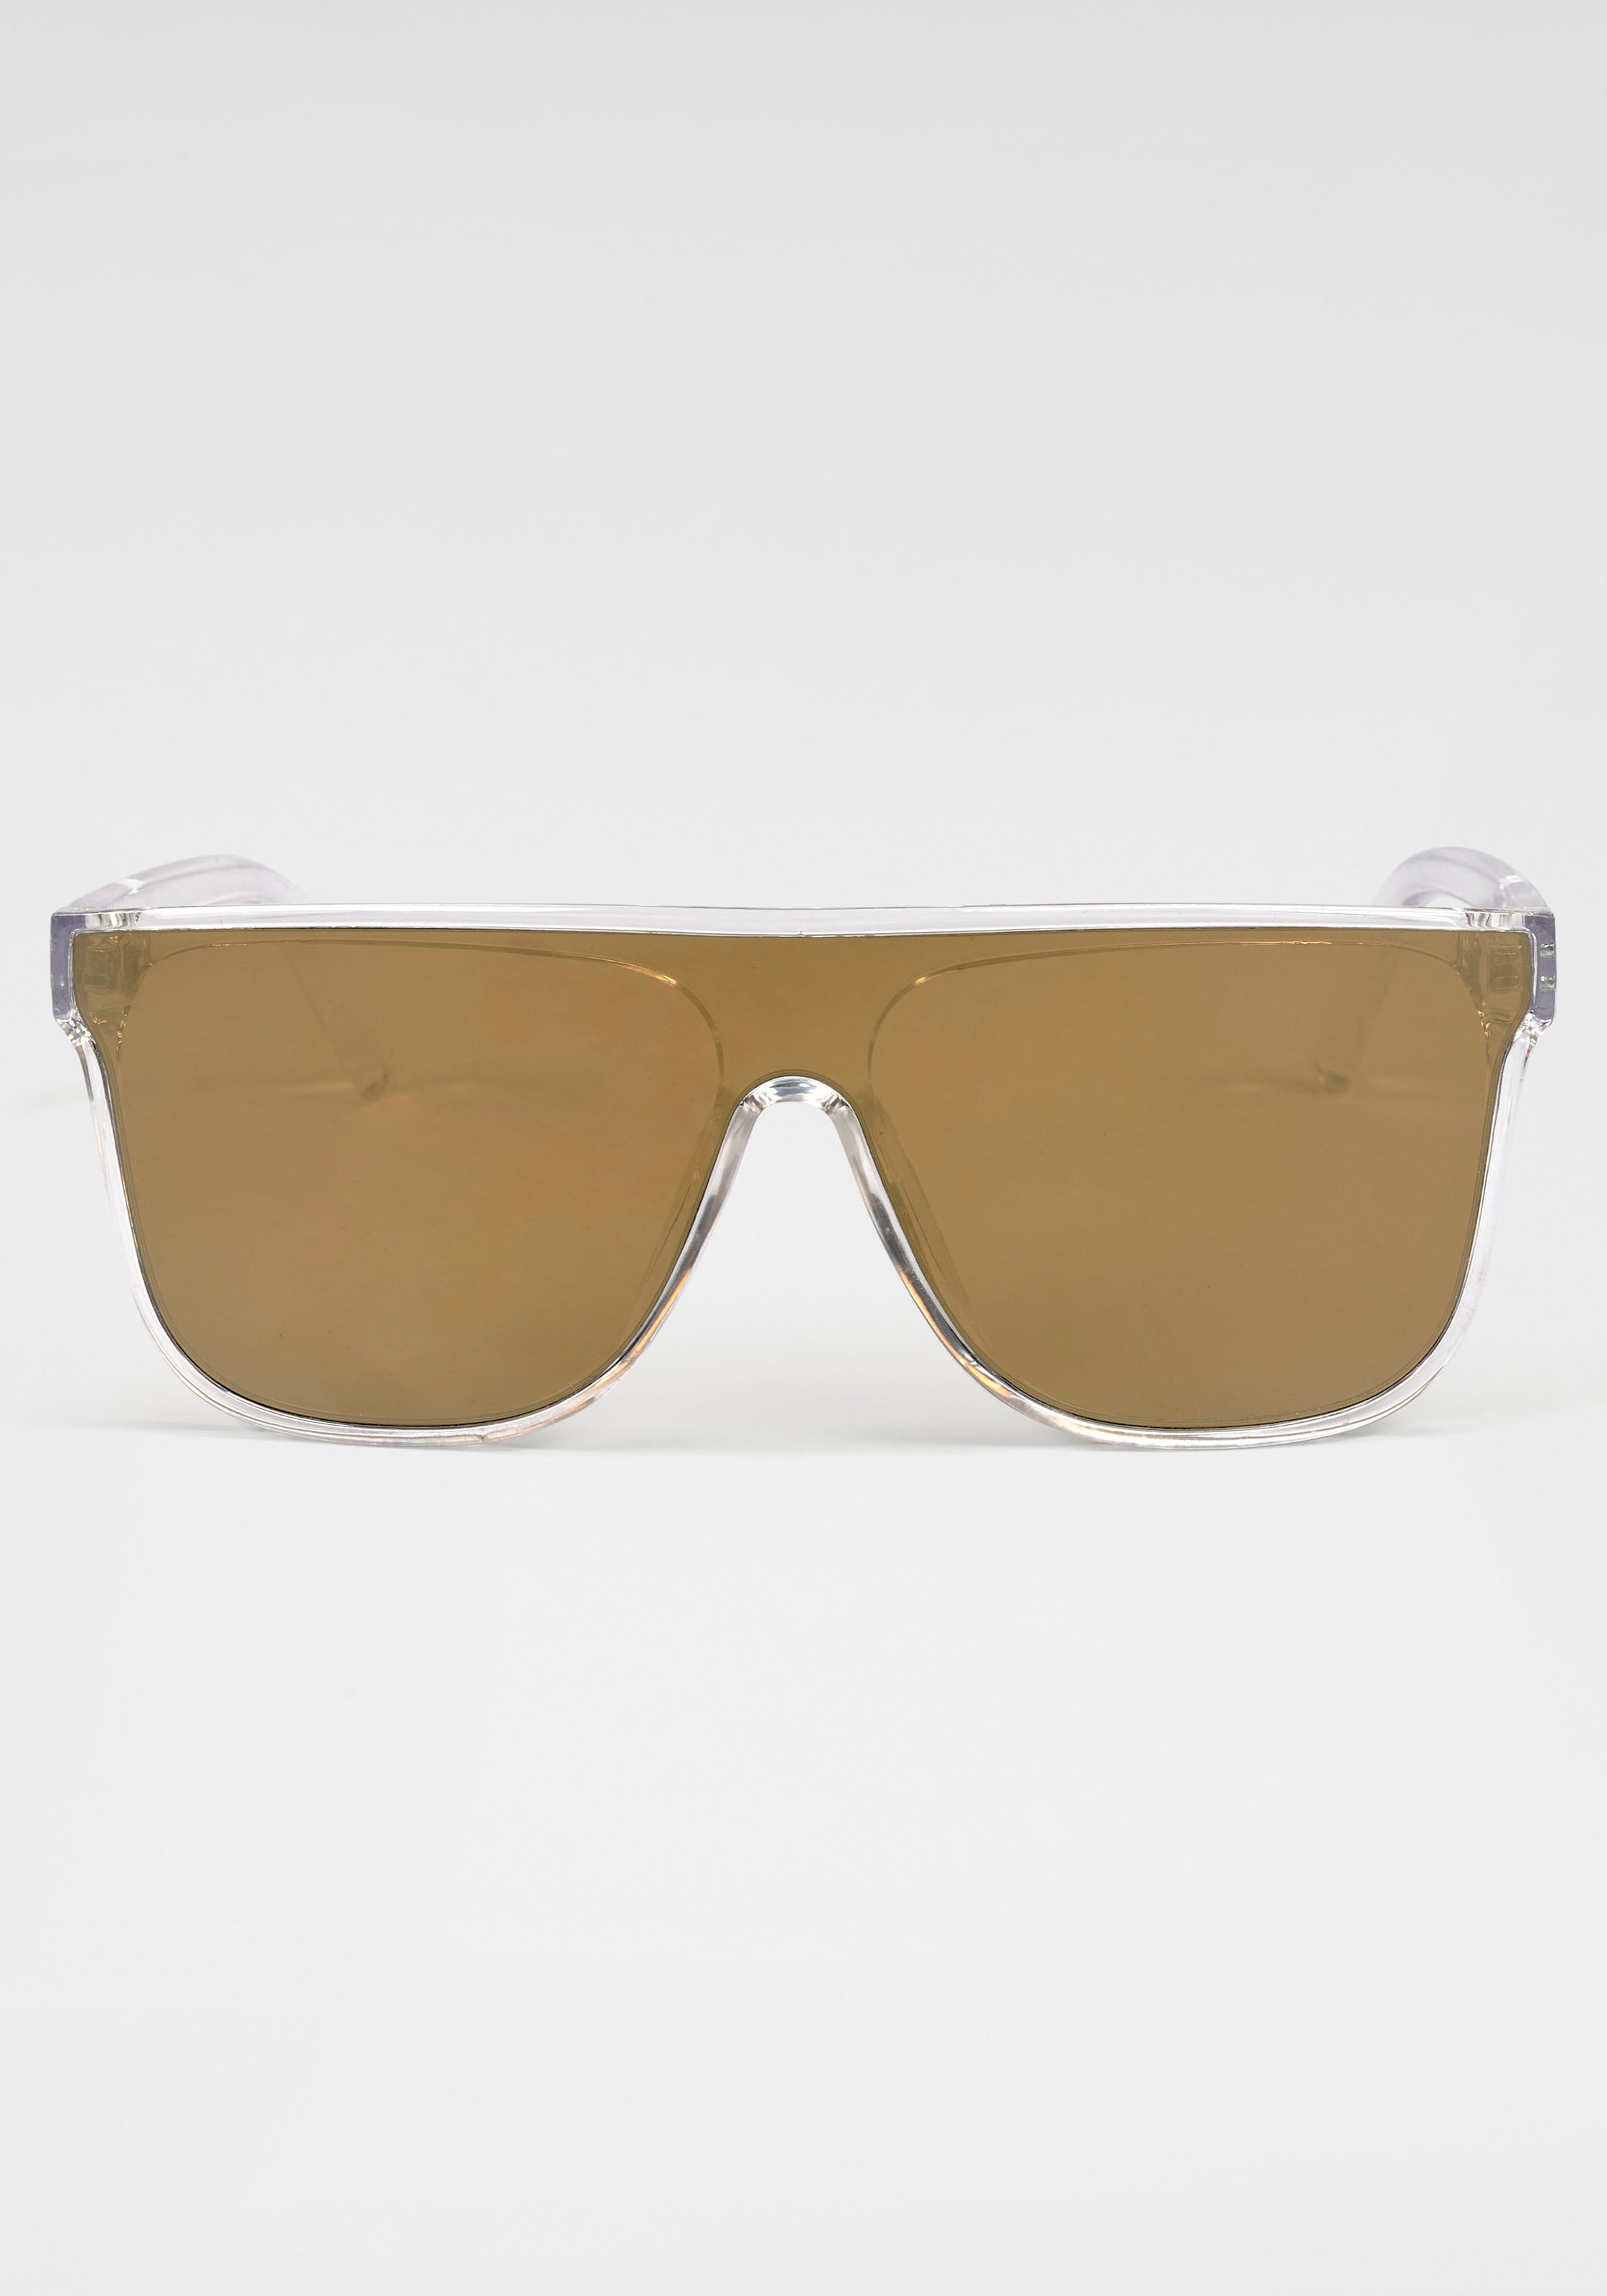 Venice Beach Sonnenbrille, Einscheibensonnenbrille aus Kunststoff